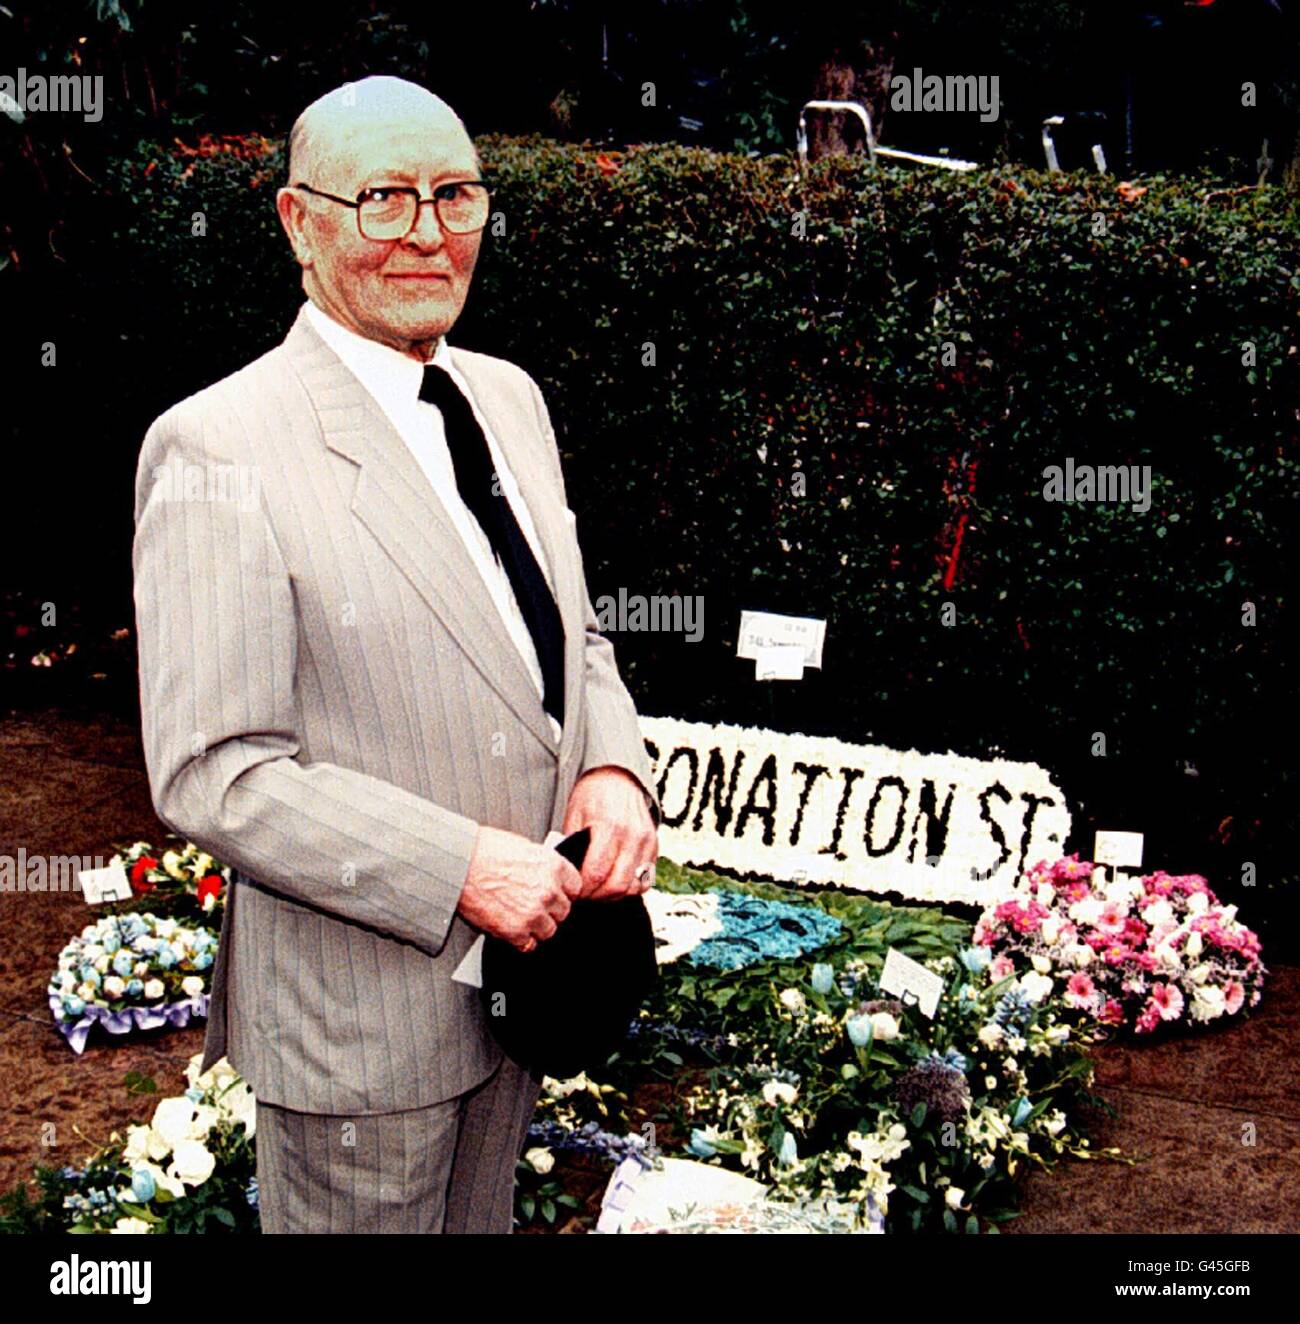 Bill Waddington (Percy Sugden), qui a joué de nombreuses scènes avec Jill Summers dans Coronation Street, à côté de fleurs de la distribution et de la famille, aux funérailles de sa co-star, au crématorium d'Eccles aujourd'hui (Wed). Voir l'histoire de PA SHOWBIZ Funeral. Pic Dave Kendall./PA Banque D'Images